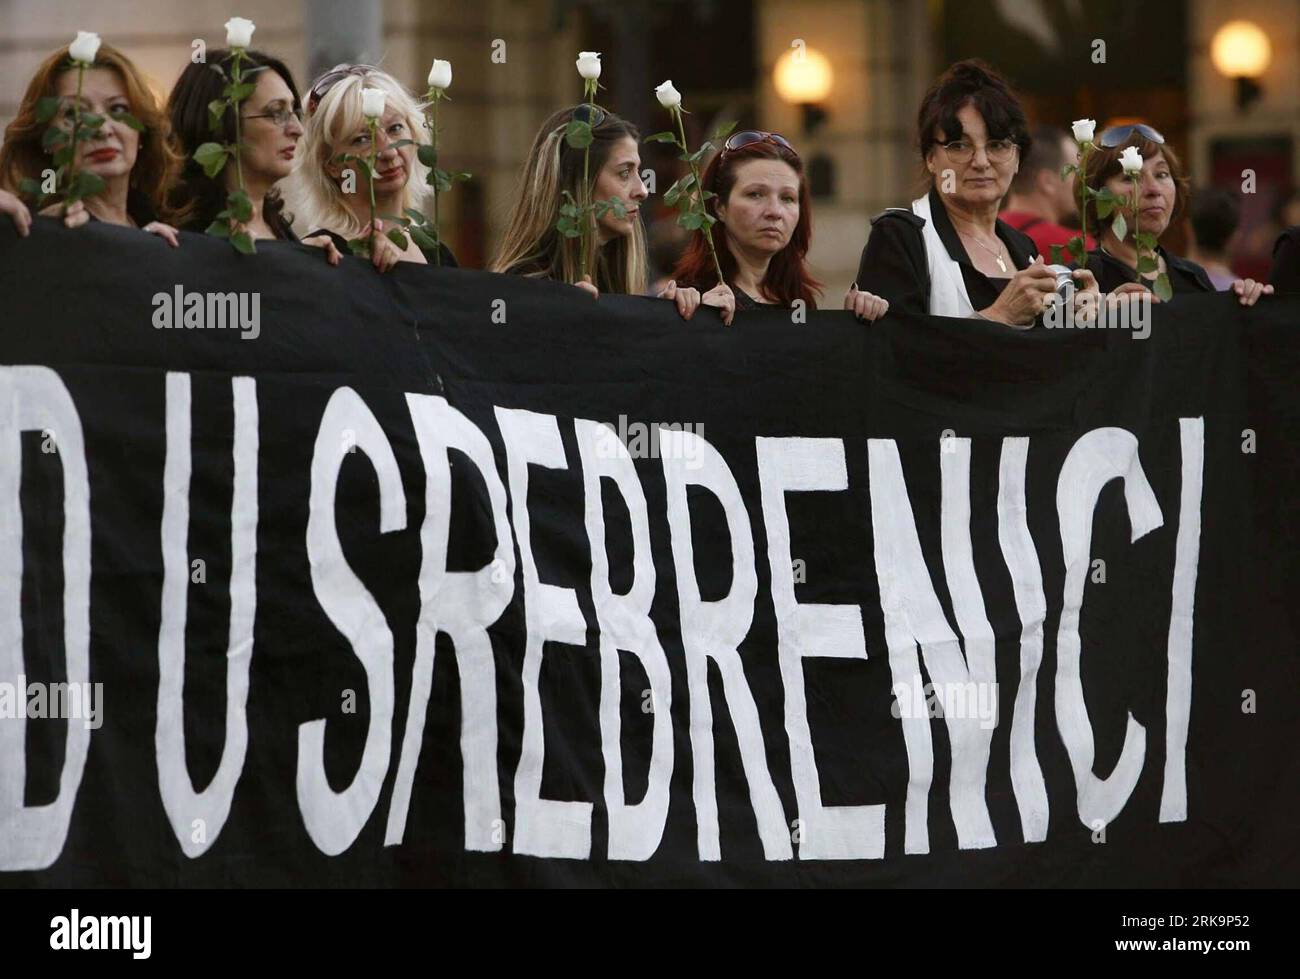 Bildnummer: 54220824 Datum: 10.07.2010 Copyright: imago/Xinhua (100710) -- BELGRAD, 10 1995. Juli 2010 (Xinhua) -- Mitglieder der NGO Women in Black nehmen am 10. Juli 2010 am Vorabend des 15. Jahrestages des Massakers von Srebrenica in Belgrad, Serbien, Teil, um die Öffentlichkeit für die Kriegsverbrechen zu sensibilisieren. Im Juli 1995 wurden in Srebrenica mehr als 8.000 bosnische muslimische Männer und Jungen von bosnischen serbischen Truppen und einer paramilitärischen Einheit aus Serbien massakriert. Das Massaker von Srebrenica ist der größte Massenmord in Europa seit dem Zweiten Weltkrieg (Xinhua/Beta)(Serbia Out) (zw) (3)SERBIEN-BELGRAD-PROTEST-SRE Stockfoto